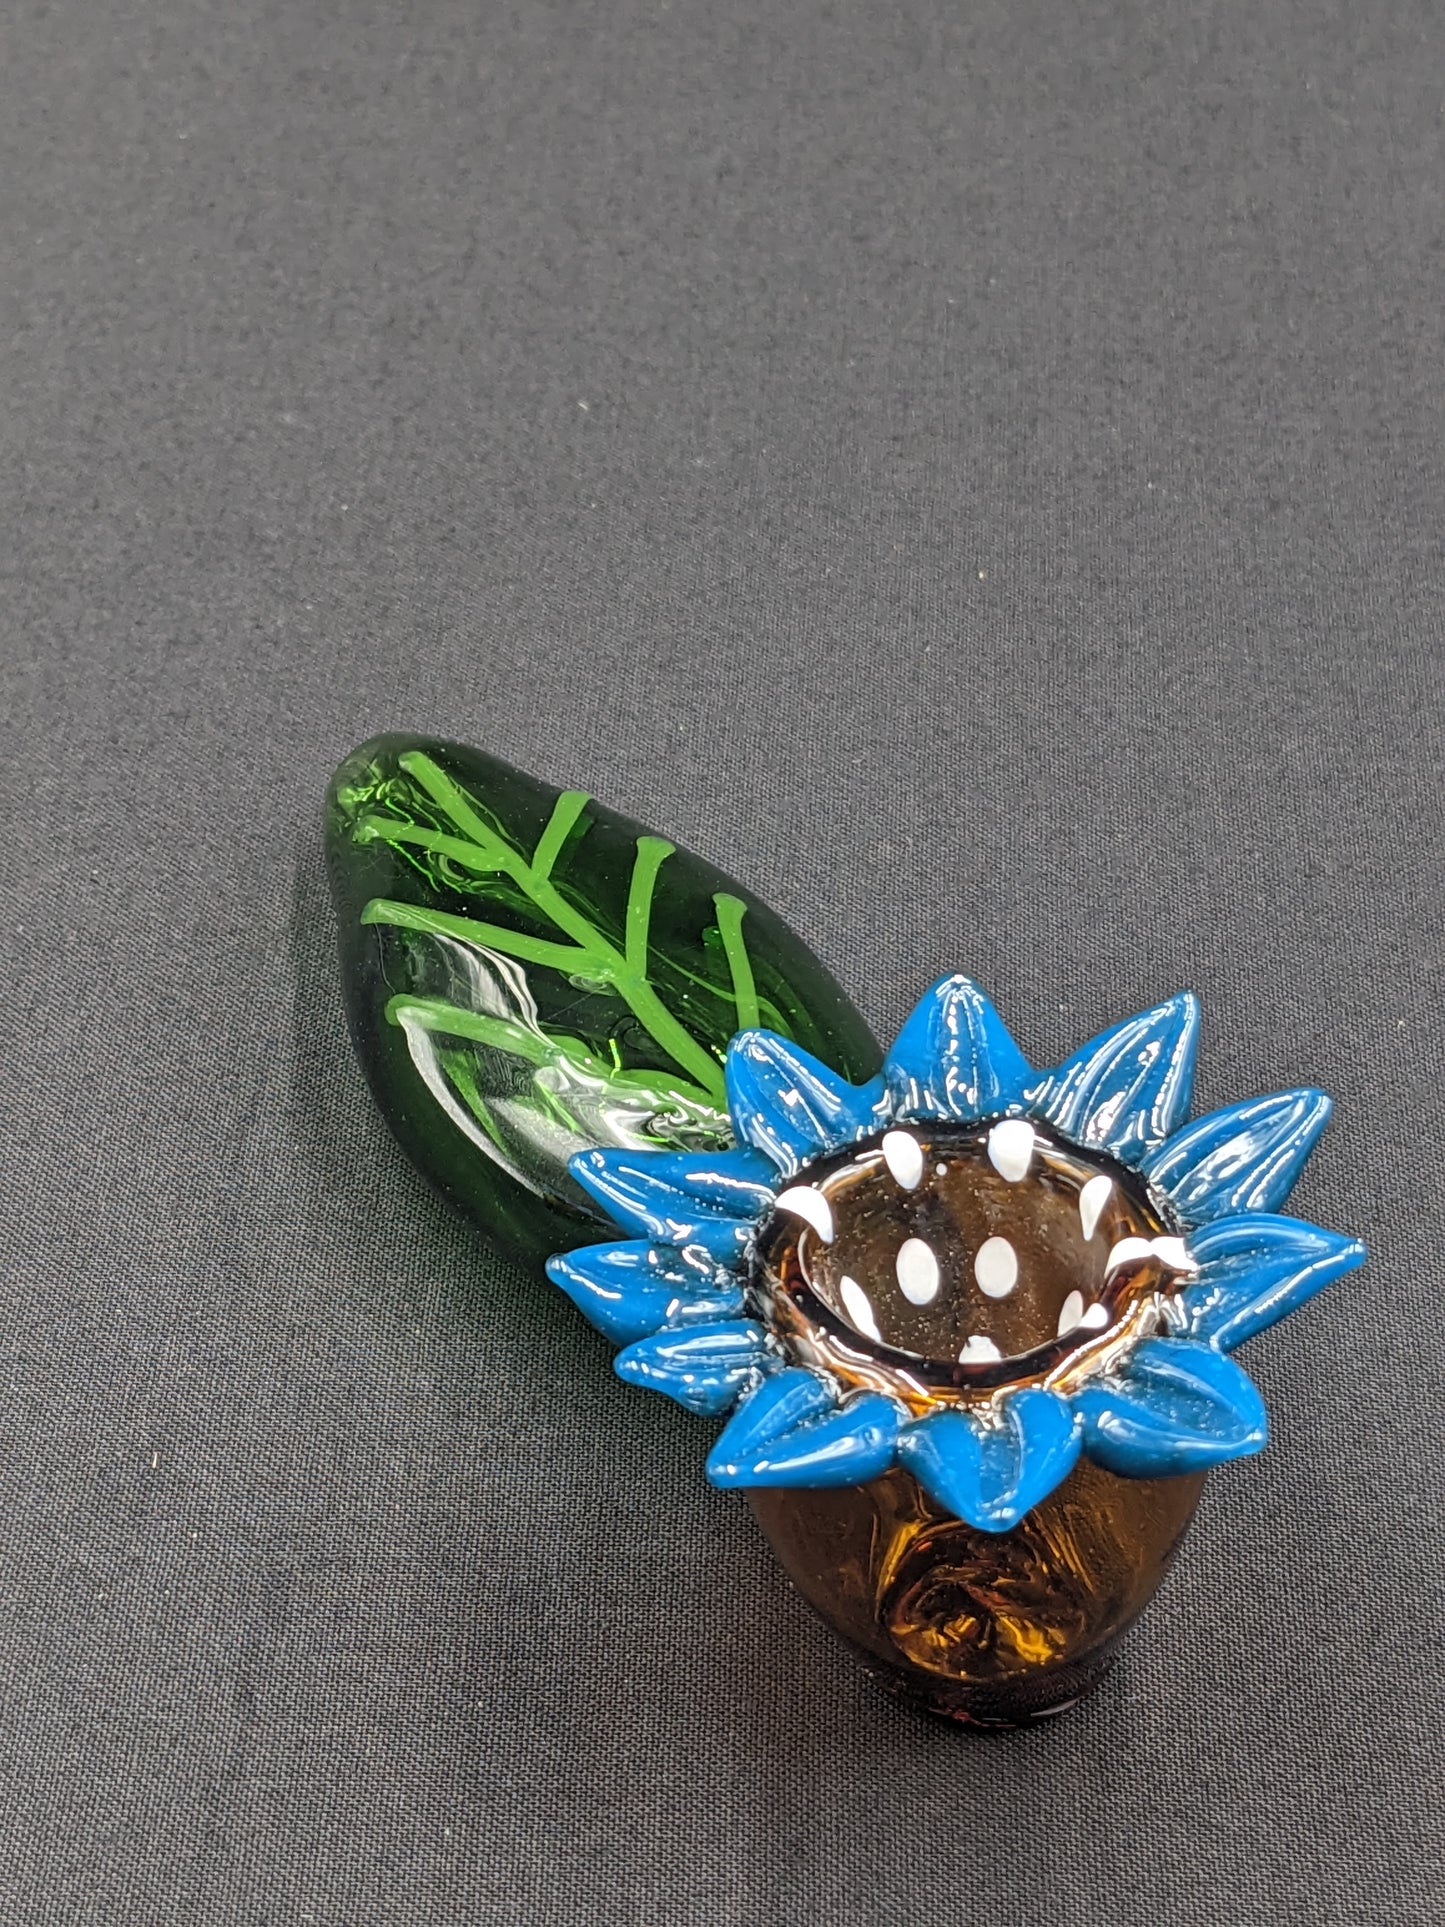 4.5" Glass Spoon Blue Flower